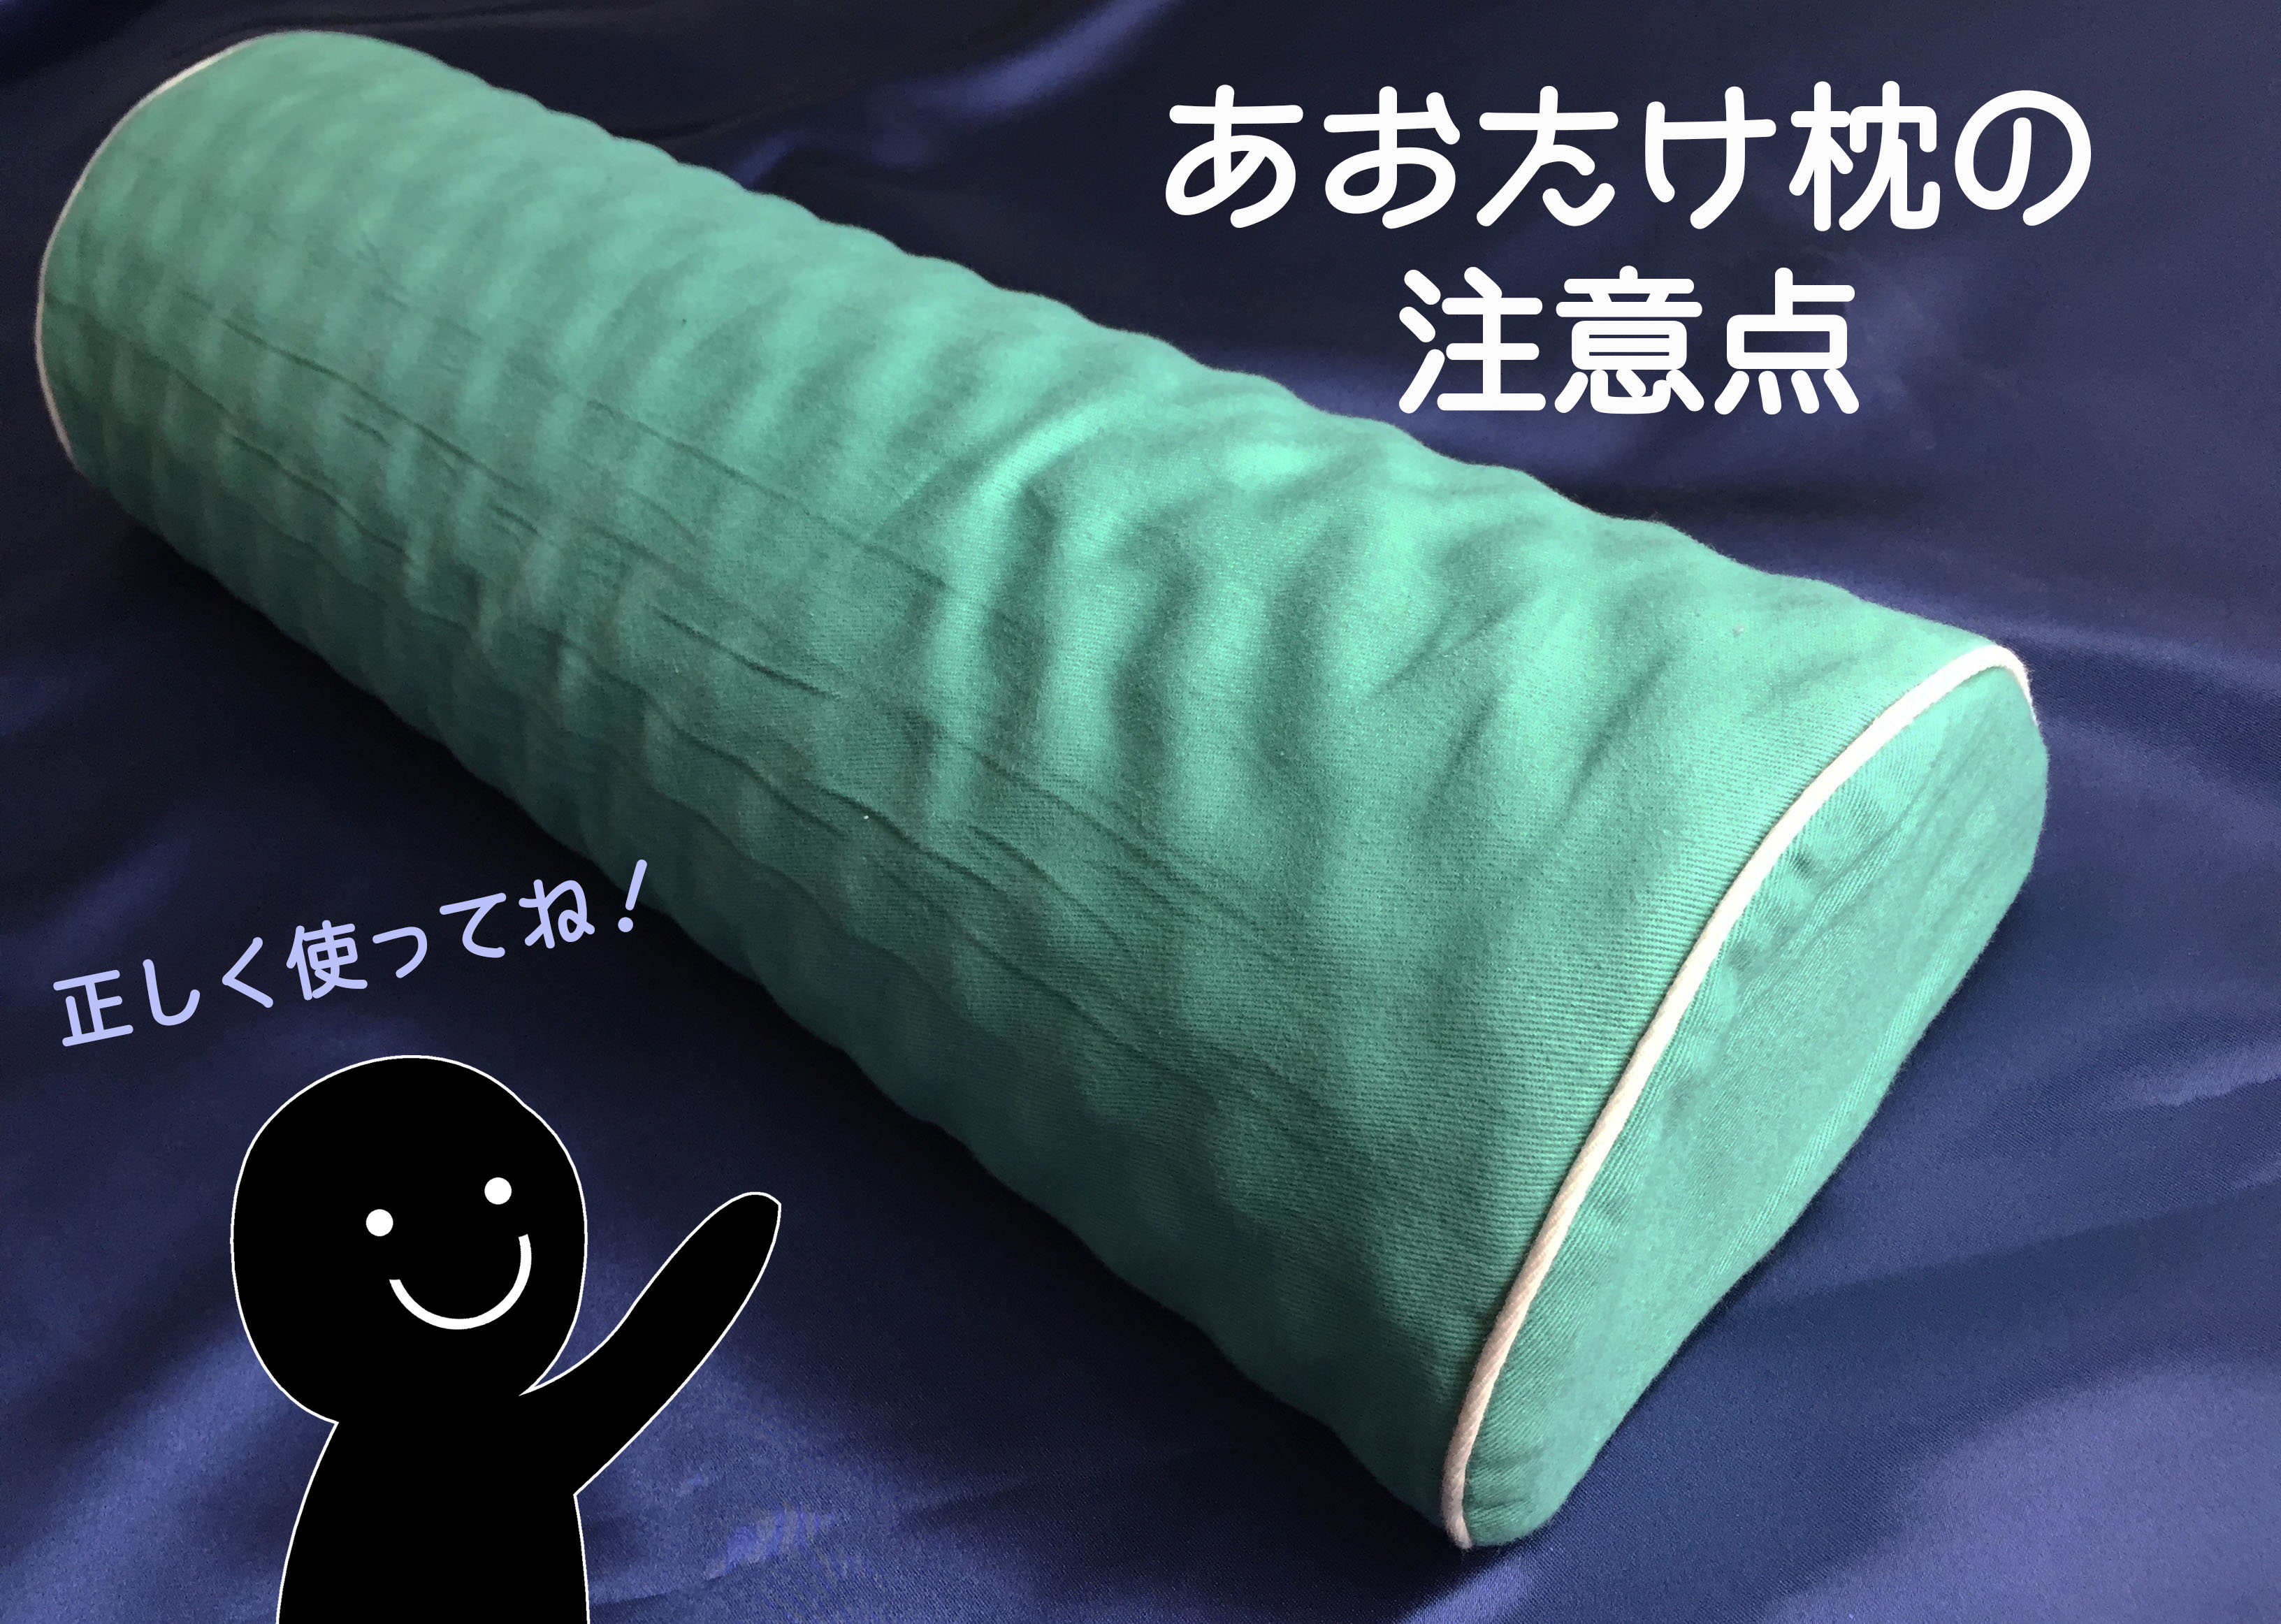 オリジナル 運動枕 あおたけ カイロ フィットネス枕 トレーニング用品